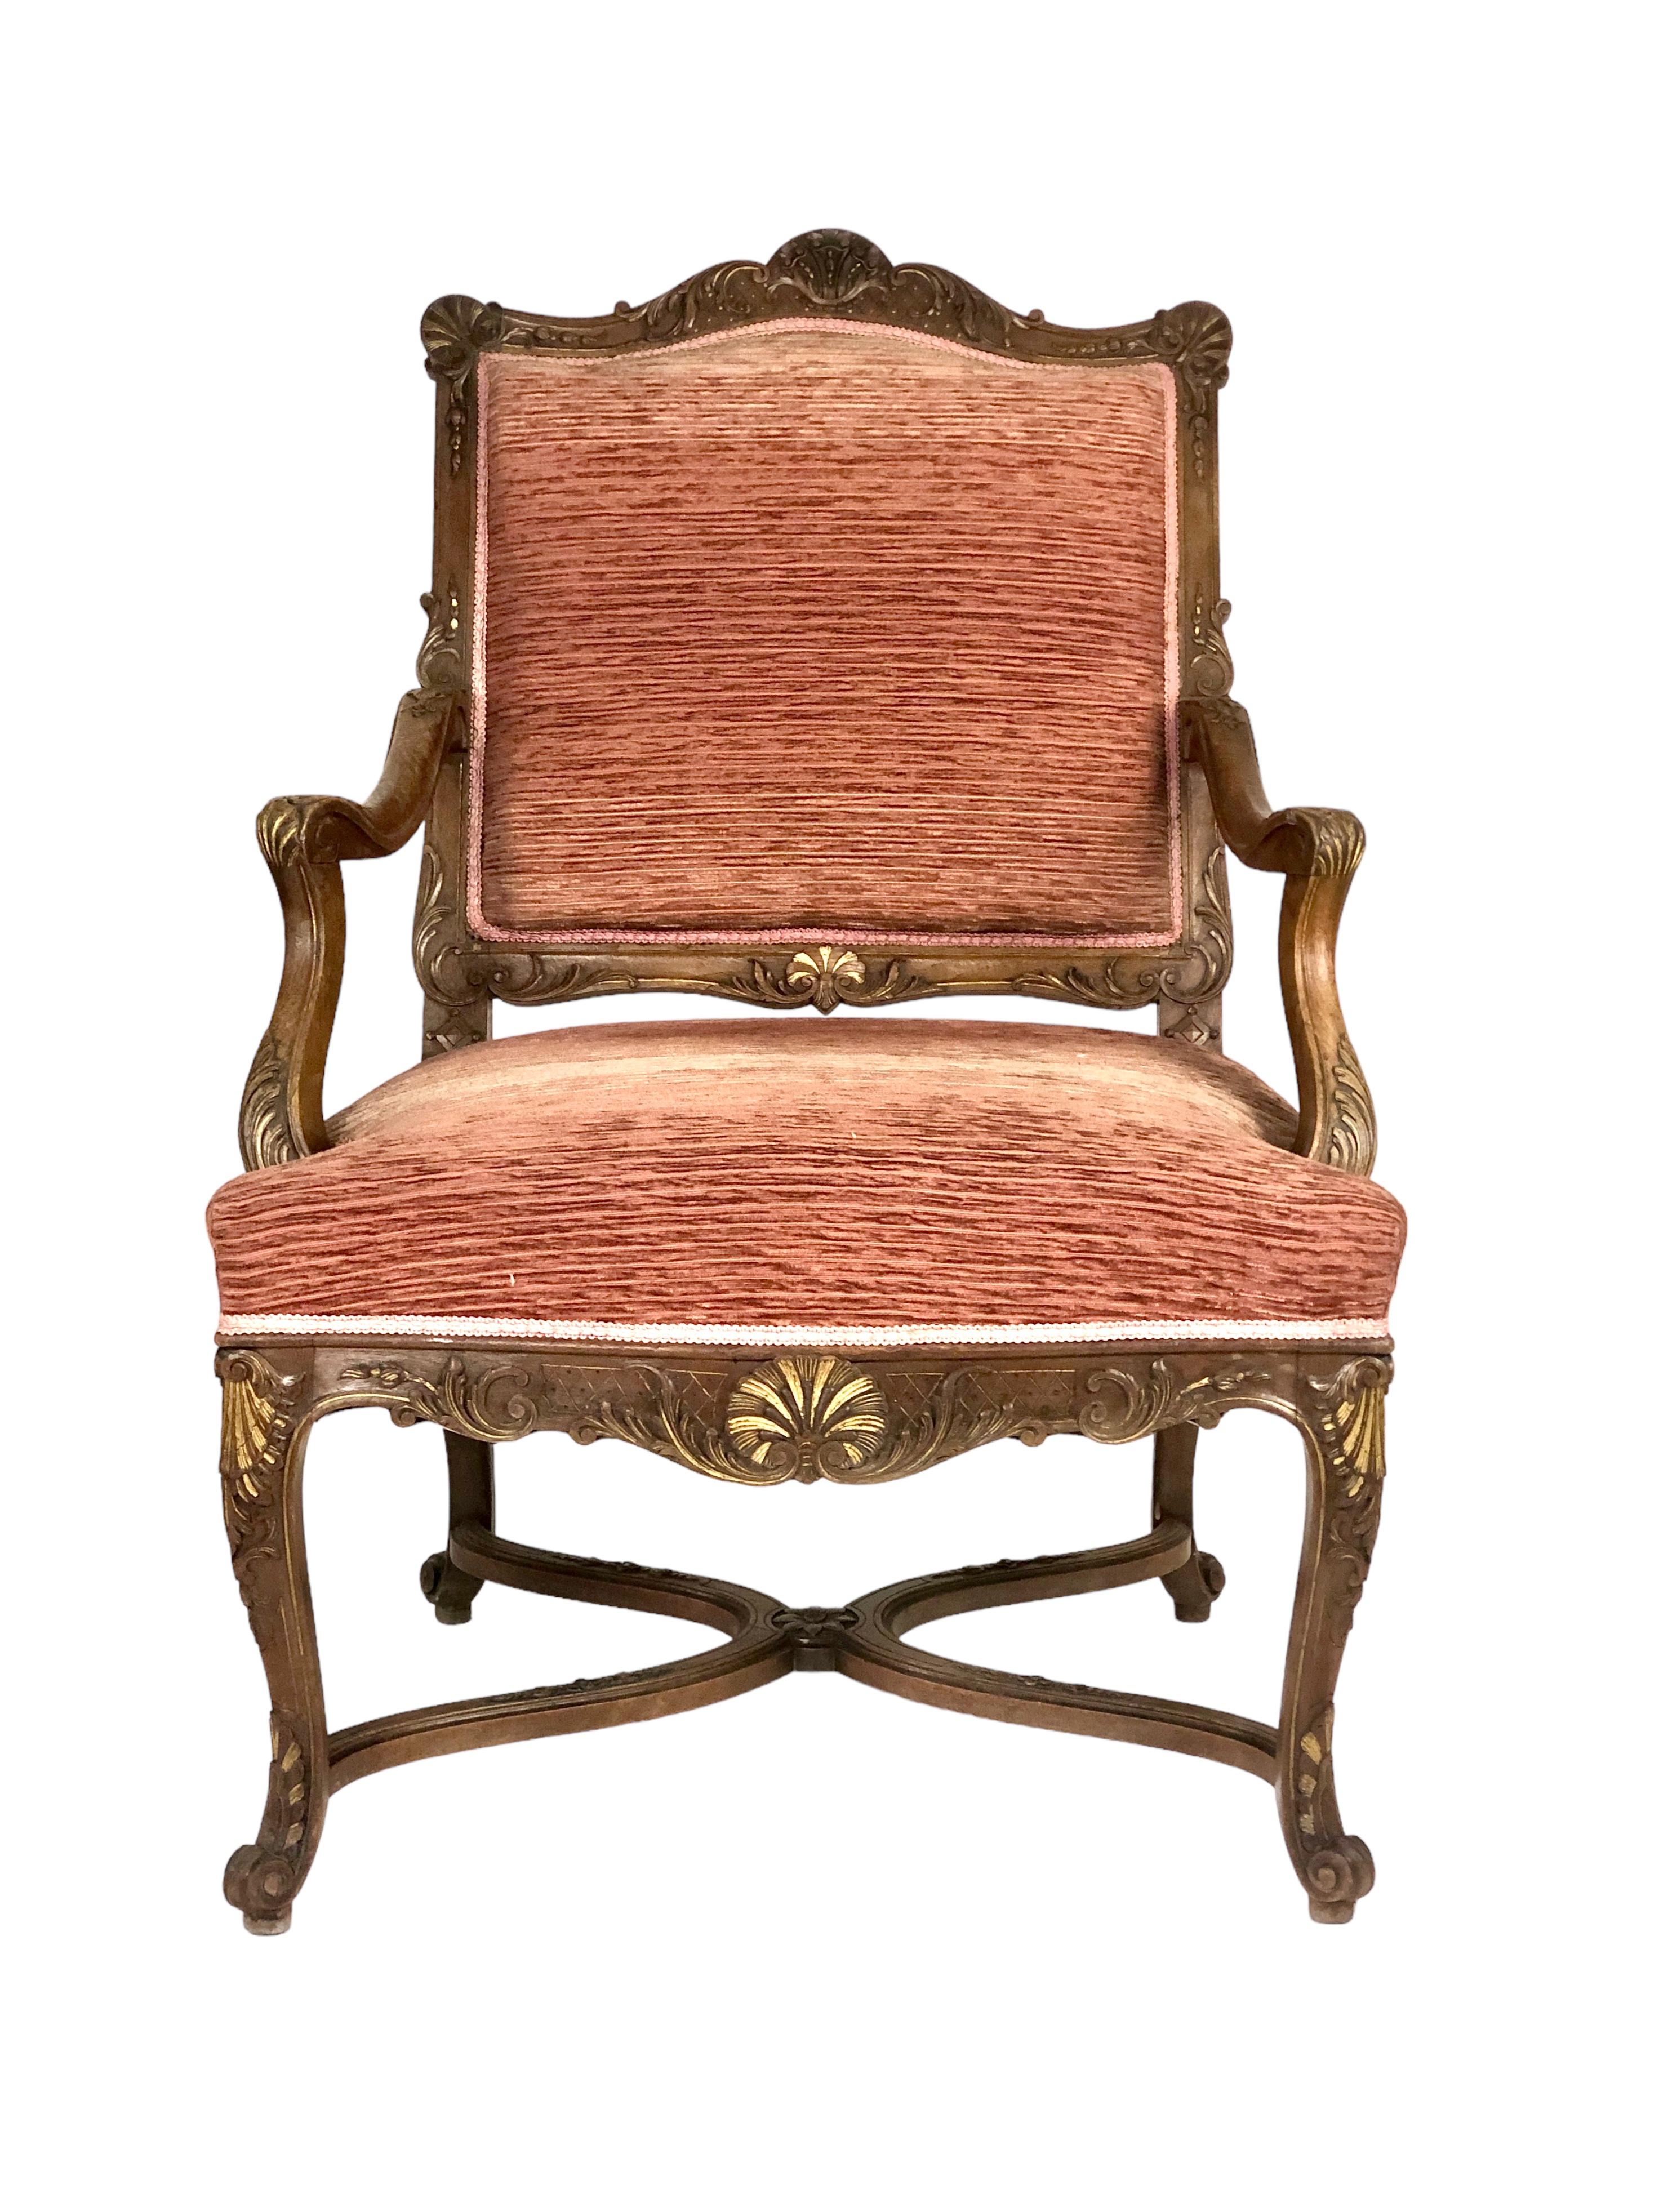 Une belle paire de fauteuils de style Régence en noyer mouluré et sculpté, garnis de velours de terre cuite. Bien que très similaires, ces chaises ne sont pas tout à fait des paires identiques. De tailles légèrement différentes, l'une est ornée d'un